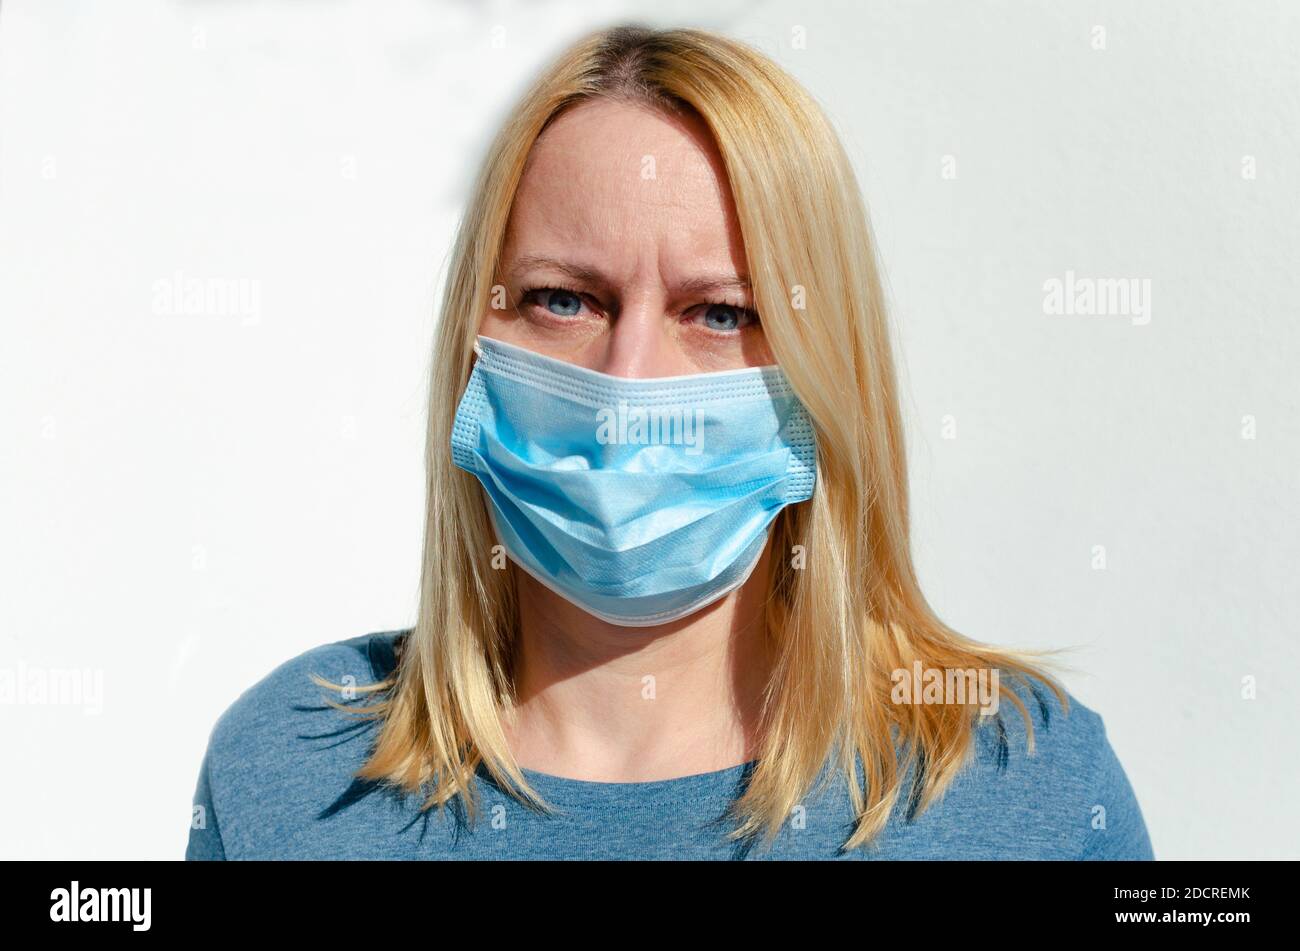 Retrato de una mujer de mediana edad en una máscara protectora en la cara aquí durante la pandemia de covid-19 Foto de stock